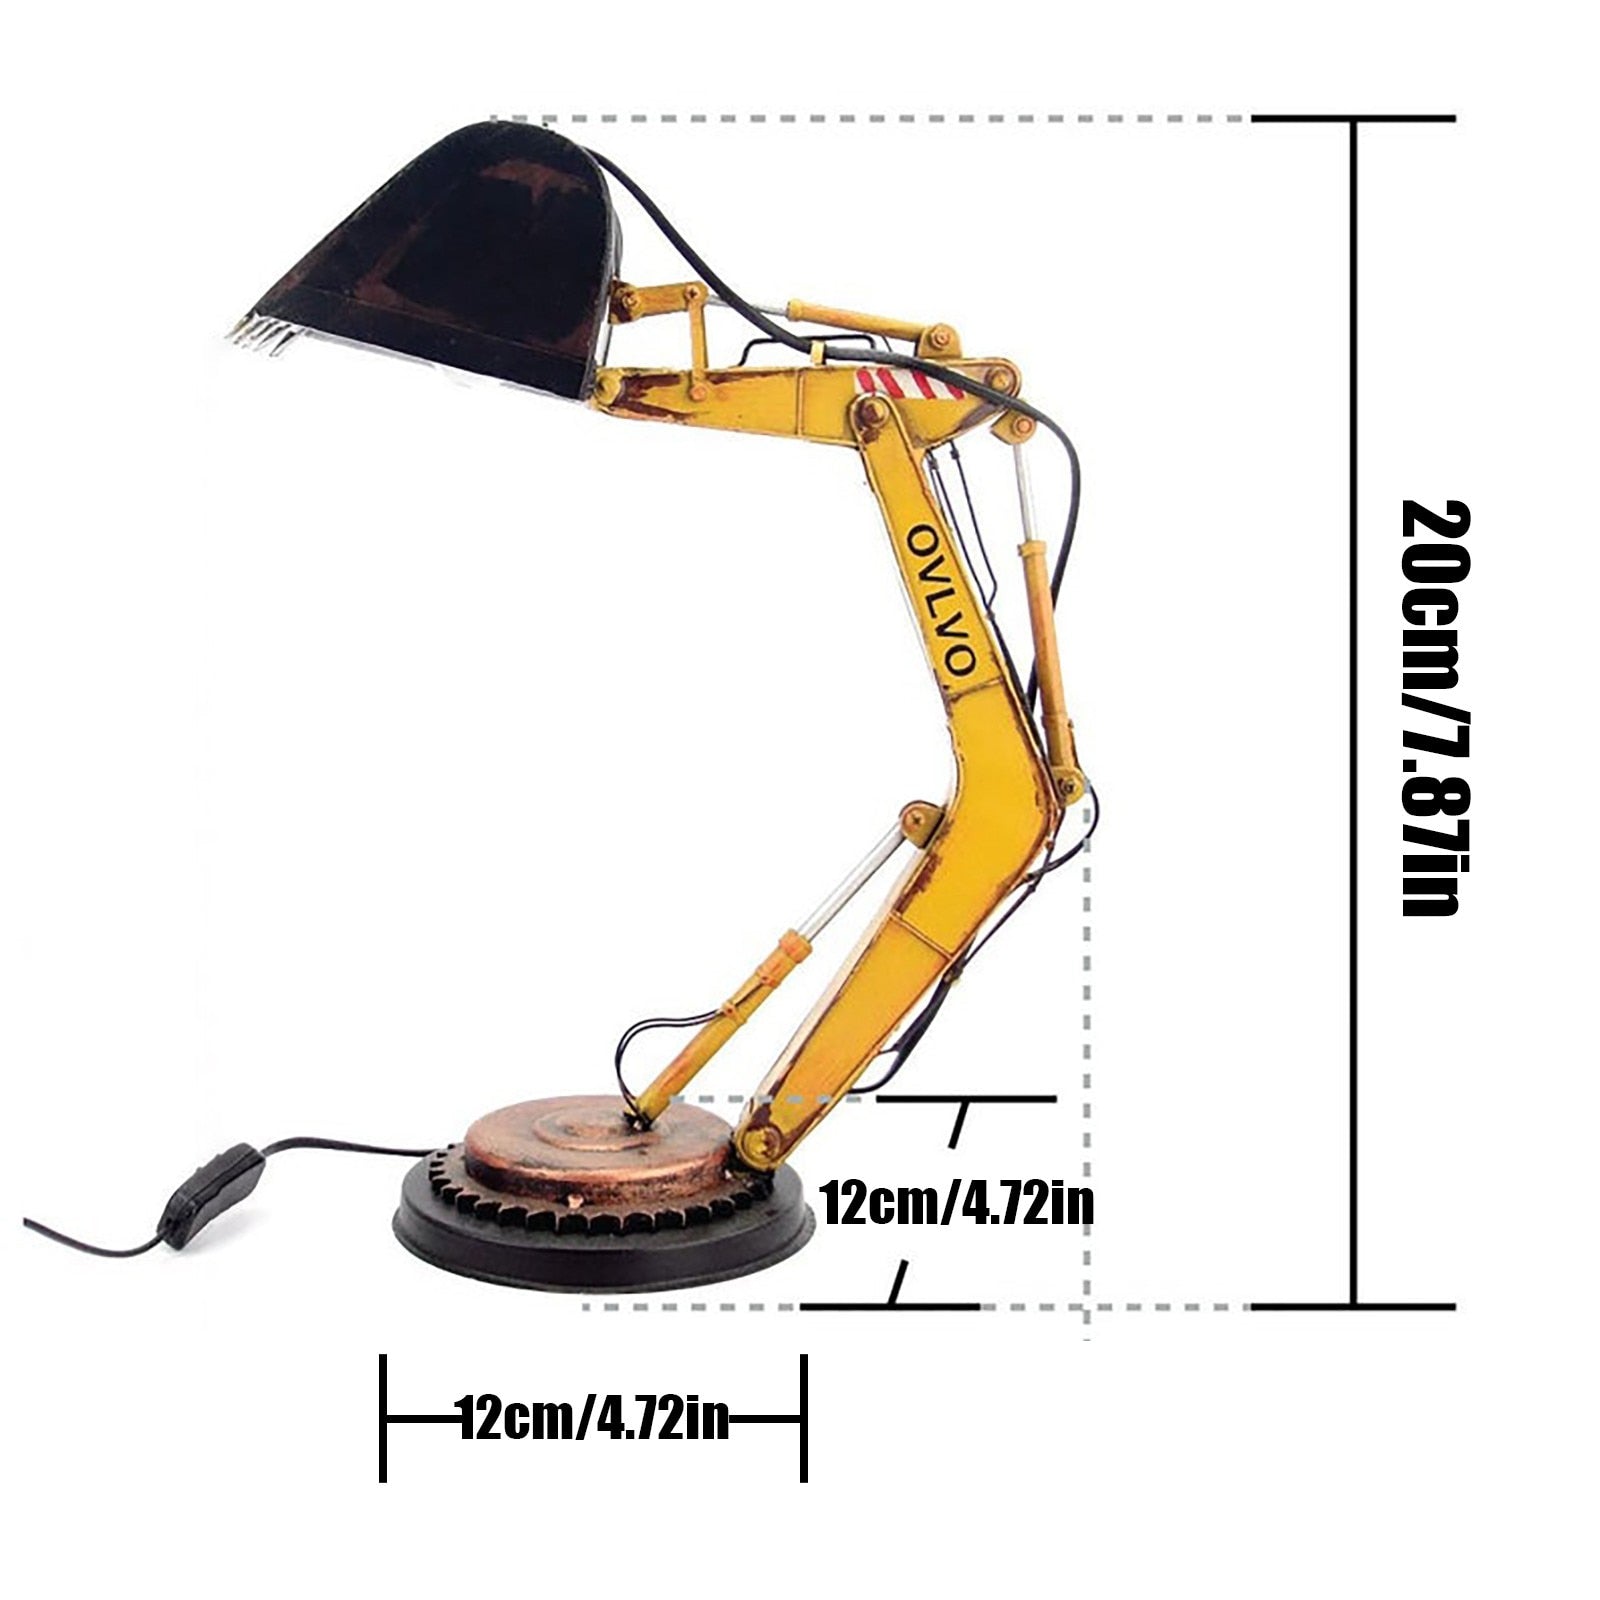 Unique Excavator Table Lamp